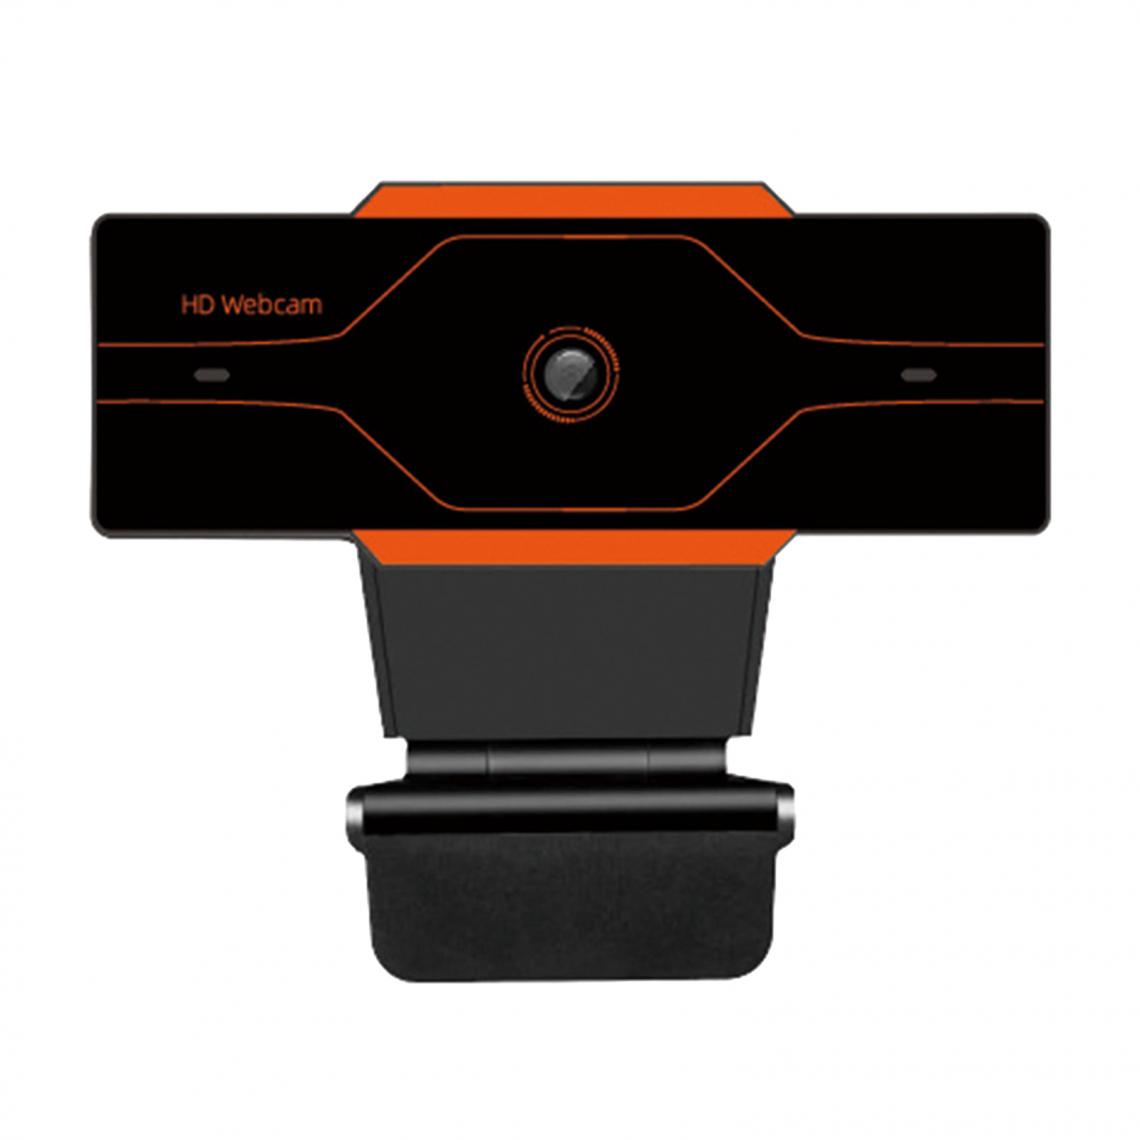 marque generique - Webcam HD Caméra Web Cam Microphone Pour Ordinateur Portable PC 720P Avec Couvercle - Webcam